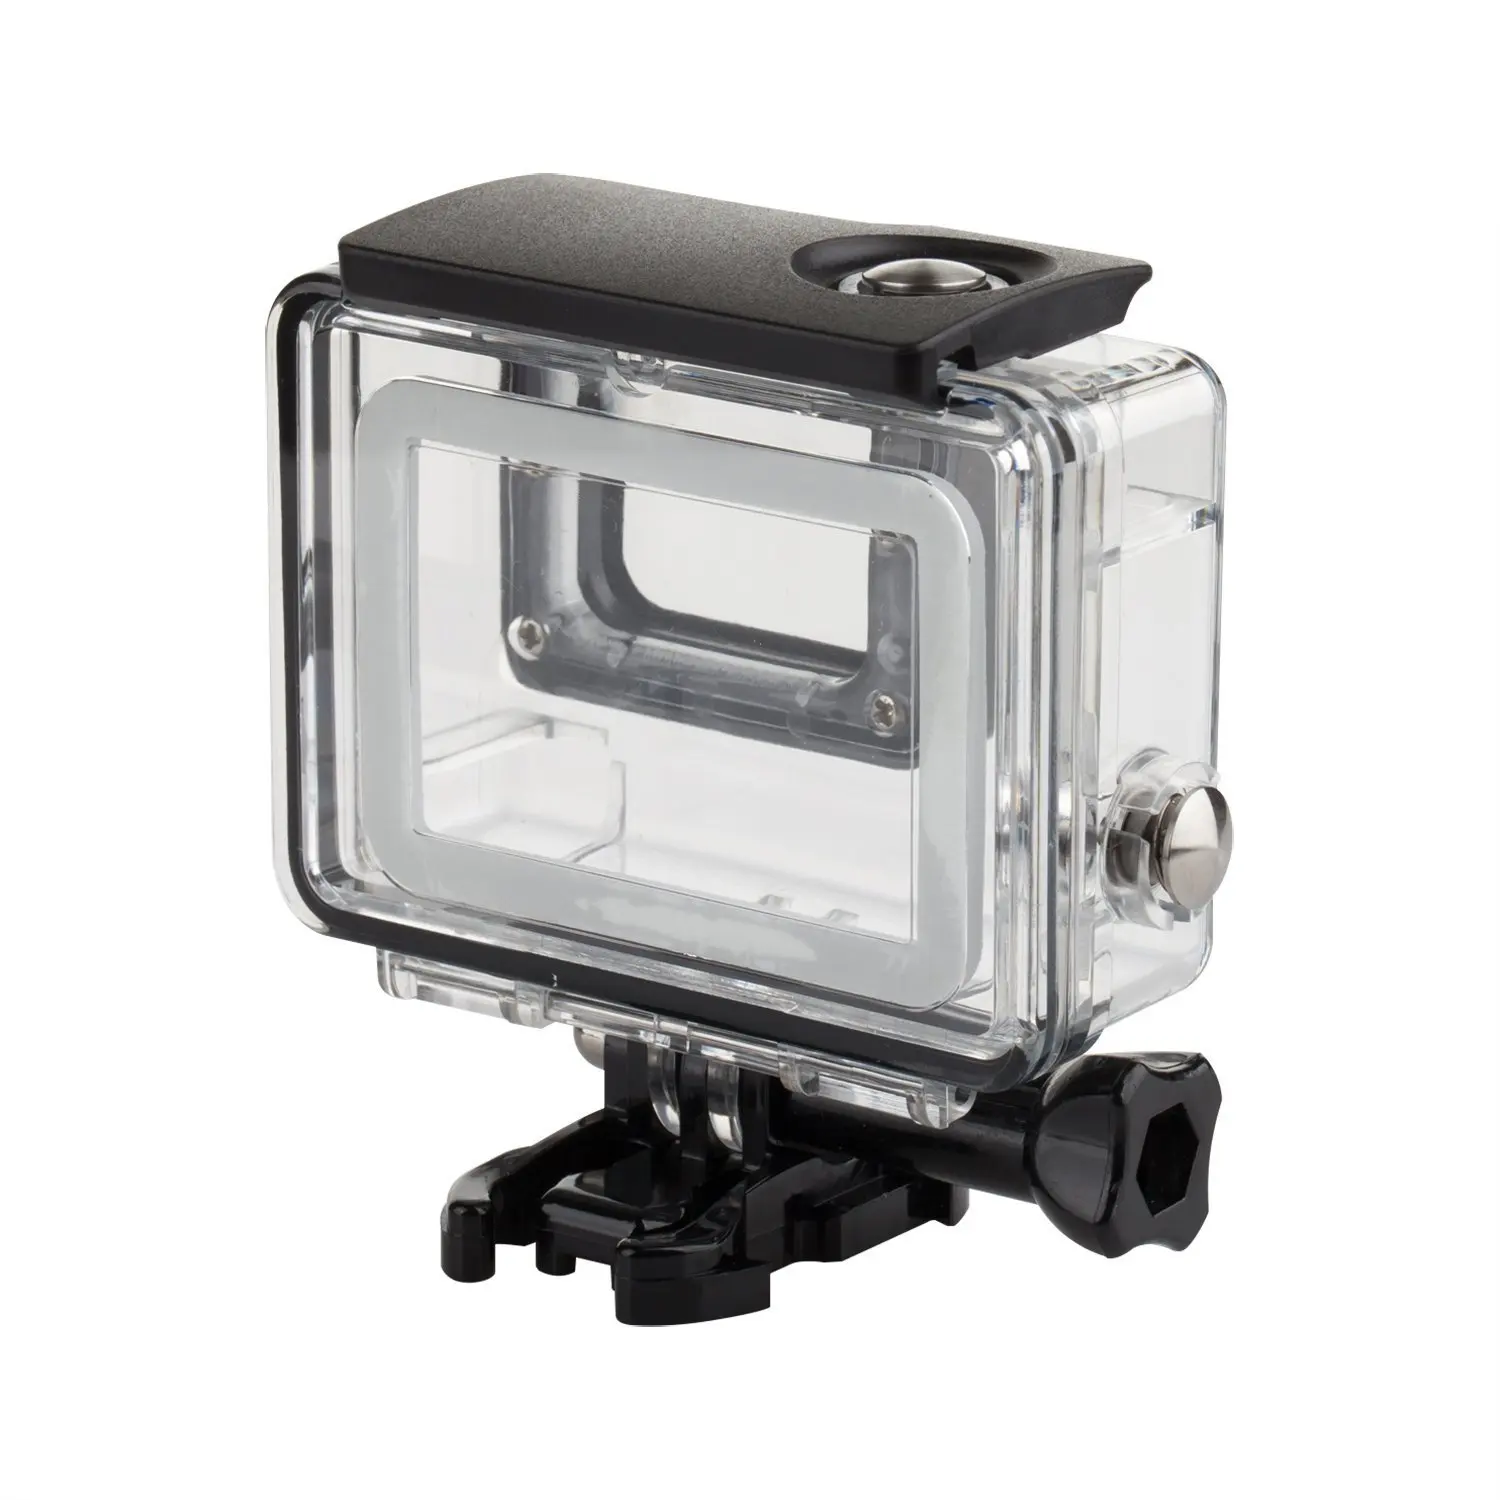 [Bio safe] для спортивной камеры Gopro Hero 5 акриловый водонепроницаемый чехол Аксессуары для камеры движения для спорта на открытом воздухе плавание путешествия